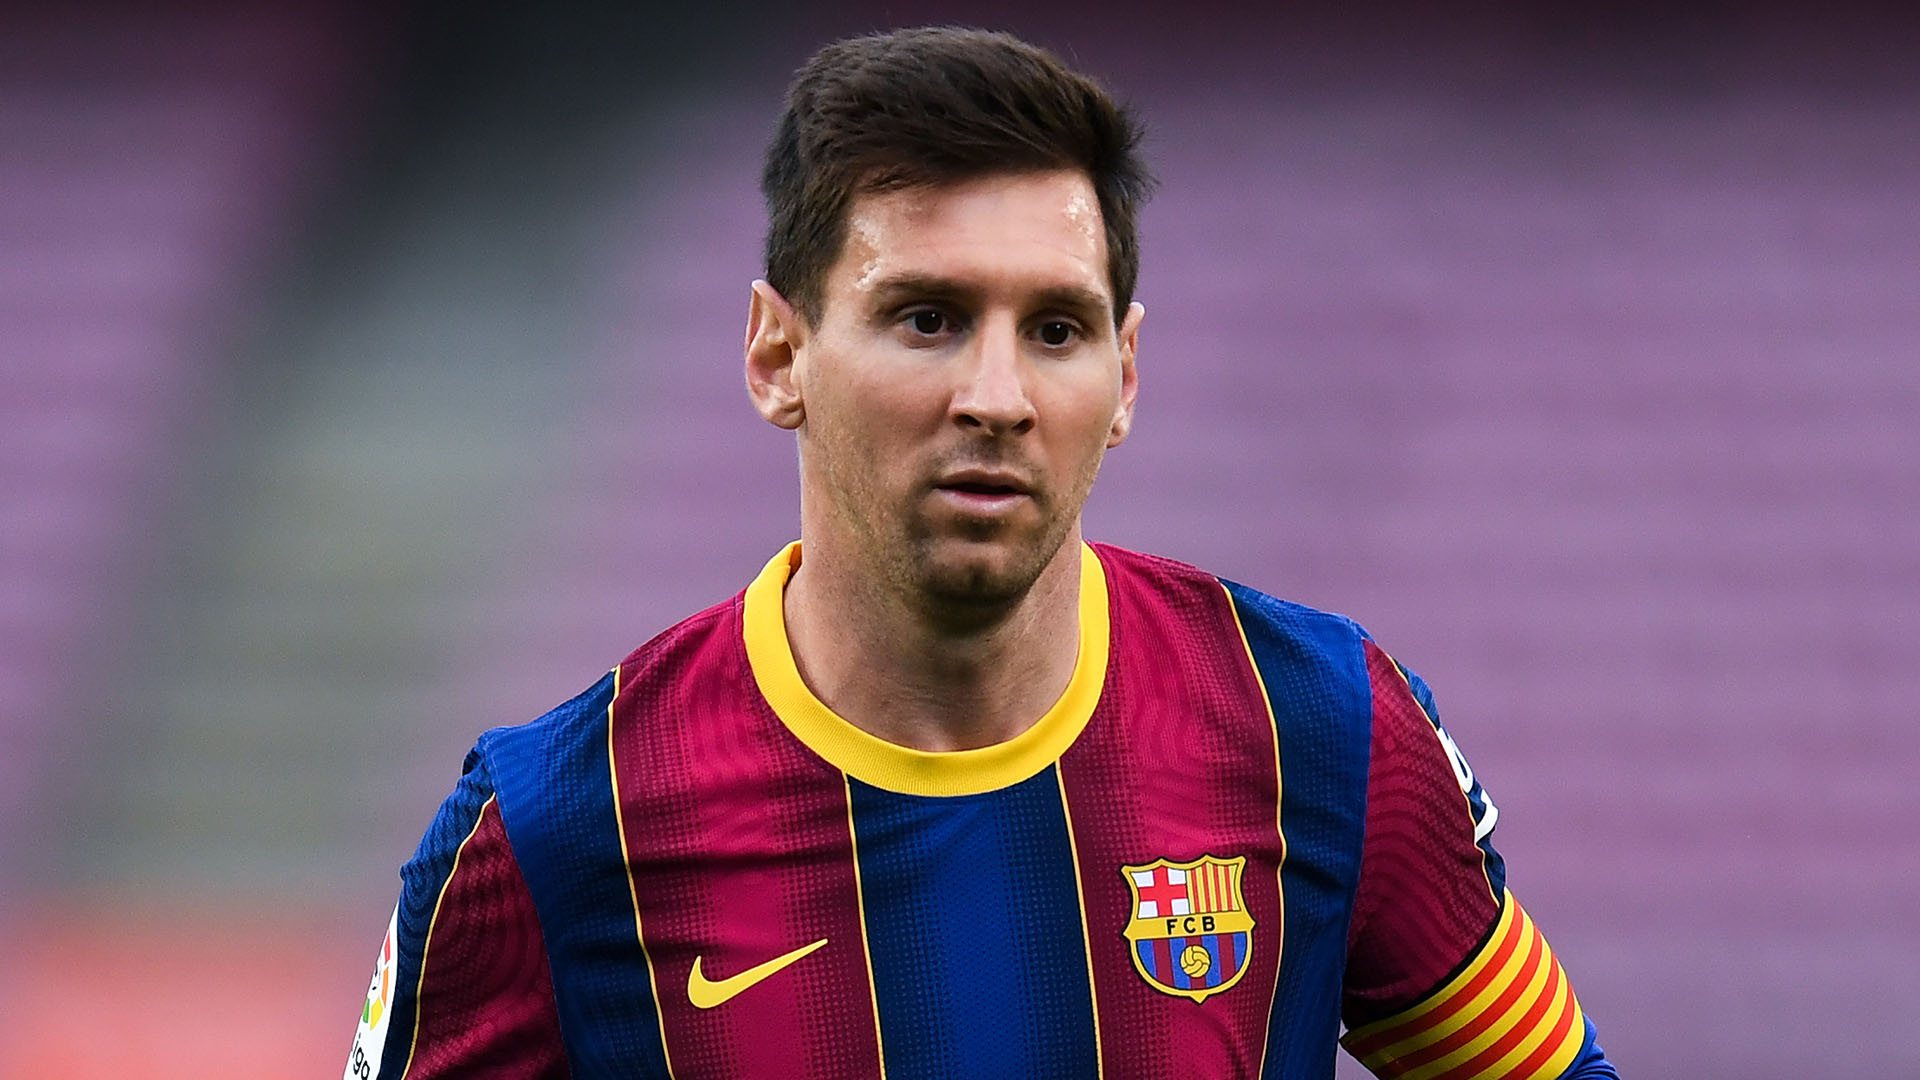 Cùng với Barca, Lionel Messi đã giành được rất nhiều danh hiệu và trở thành một trong những cầu thủ xuất sắc nhất lịch sử La Liga. Hãy xem những hình ảnh về Messi xóa tên đối thủ trong mỗi trận đấu để cảm nhận sức mạnh và tài năng của ngôi sao này.